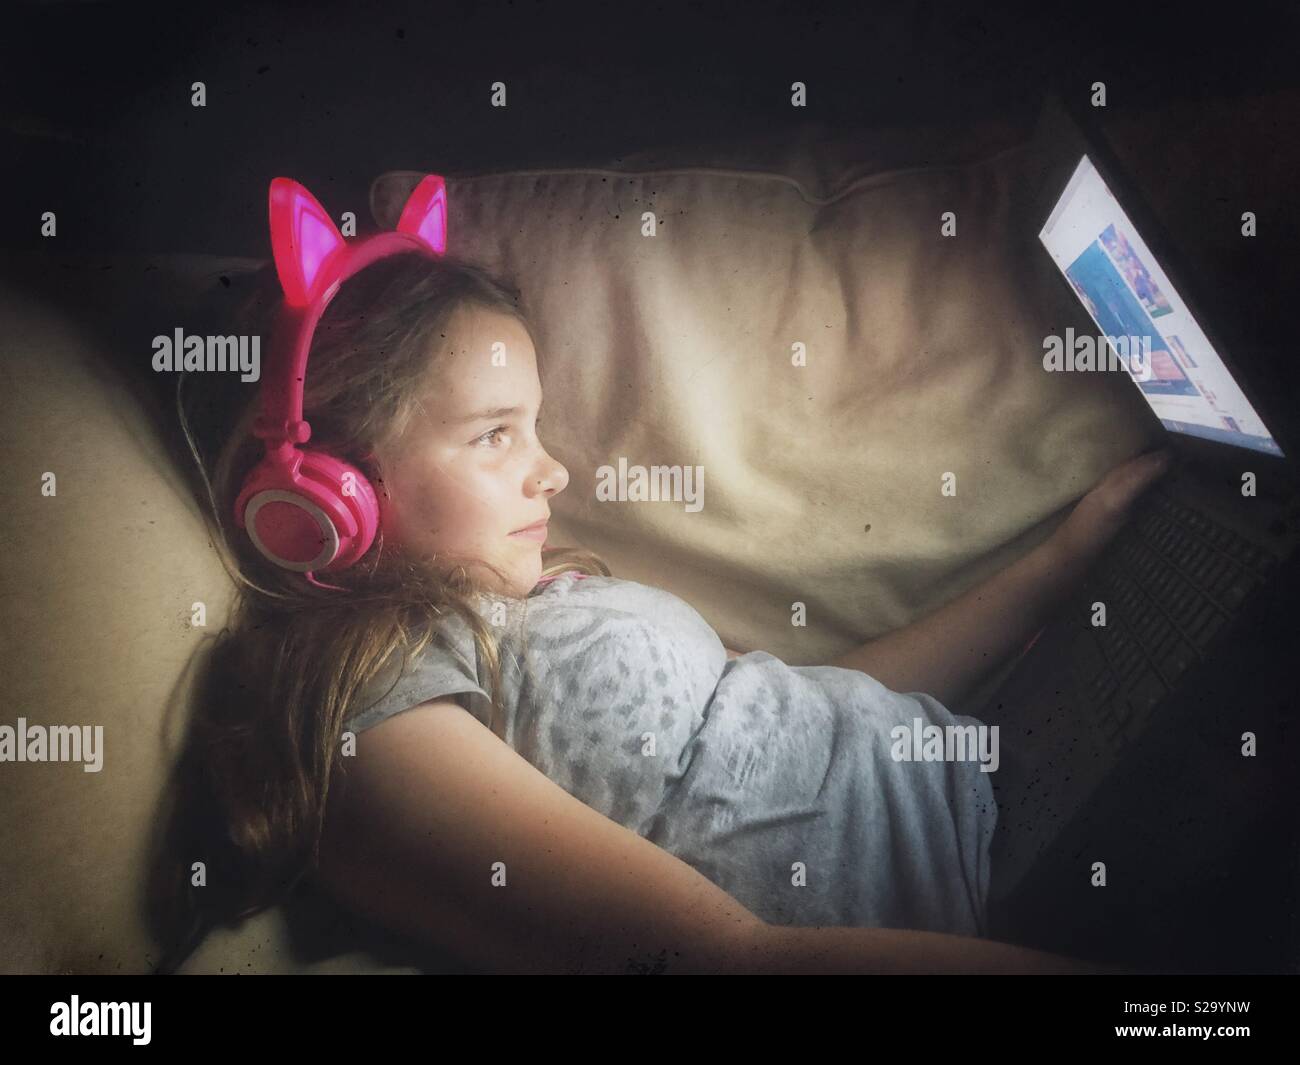 11 años de edad, vestida de luz neon pink auriculares viendo videos en un portátil. Foto de stock